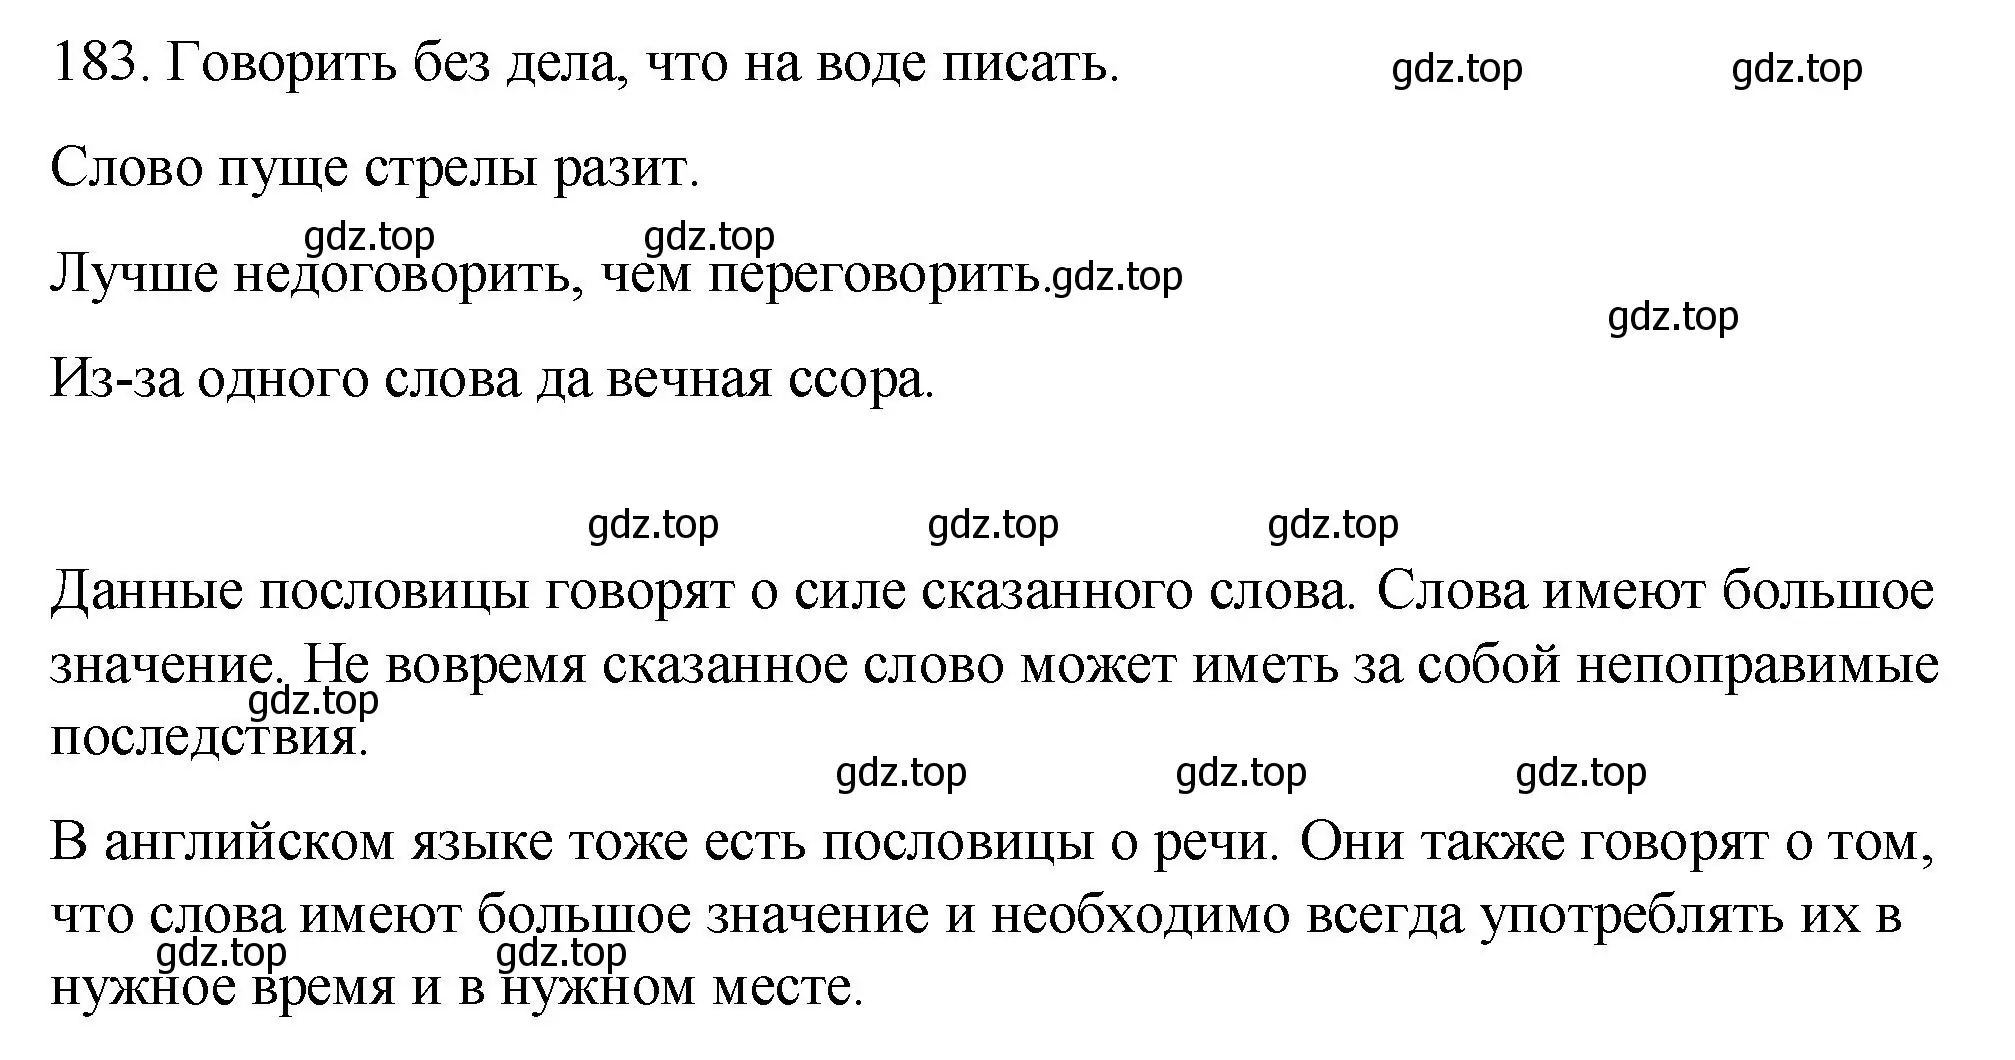 Решение номер 183 (страница 256) гдз по русскому языку 10-11 класс Гольцова, Шамшин, учебник 2 часть